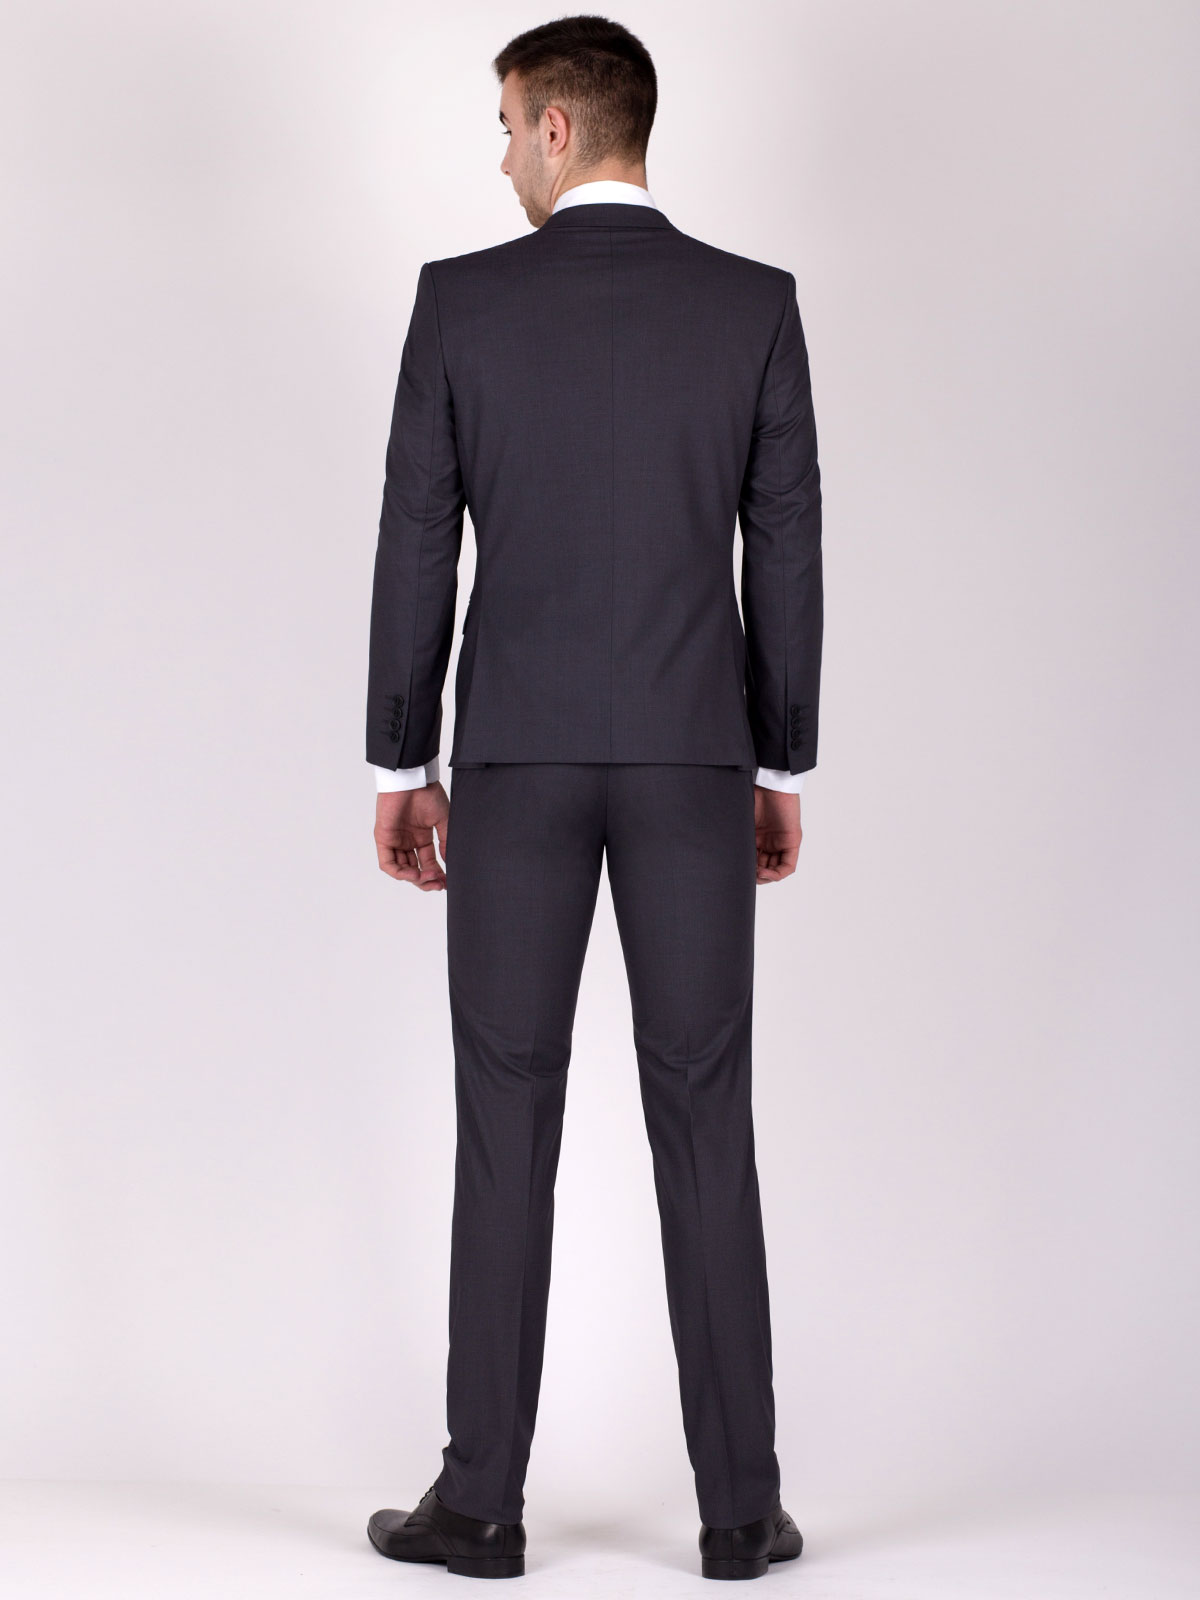  κομψό ανδρικό κοστούμι σε σκούρο μπλε  - 68014 € 140.04 img3